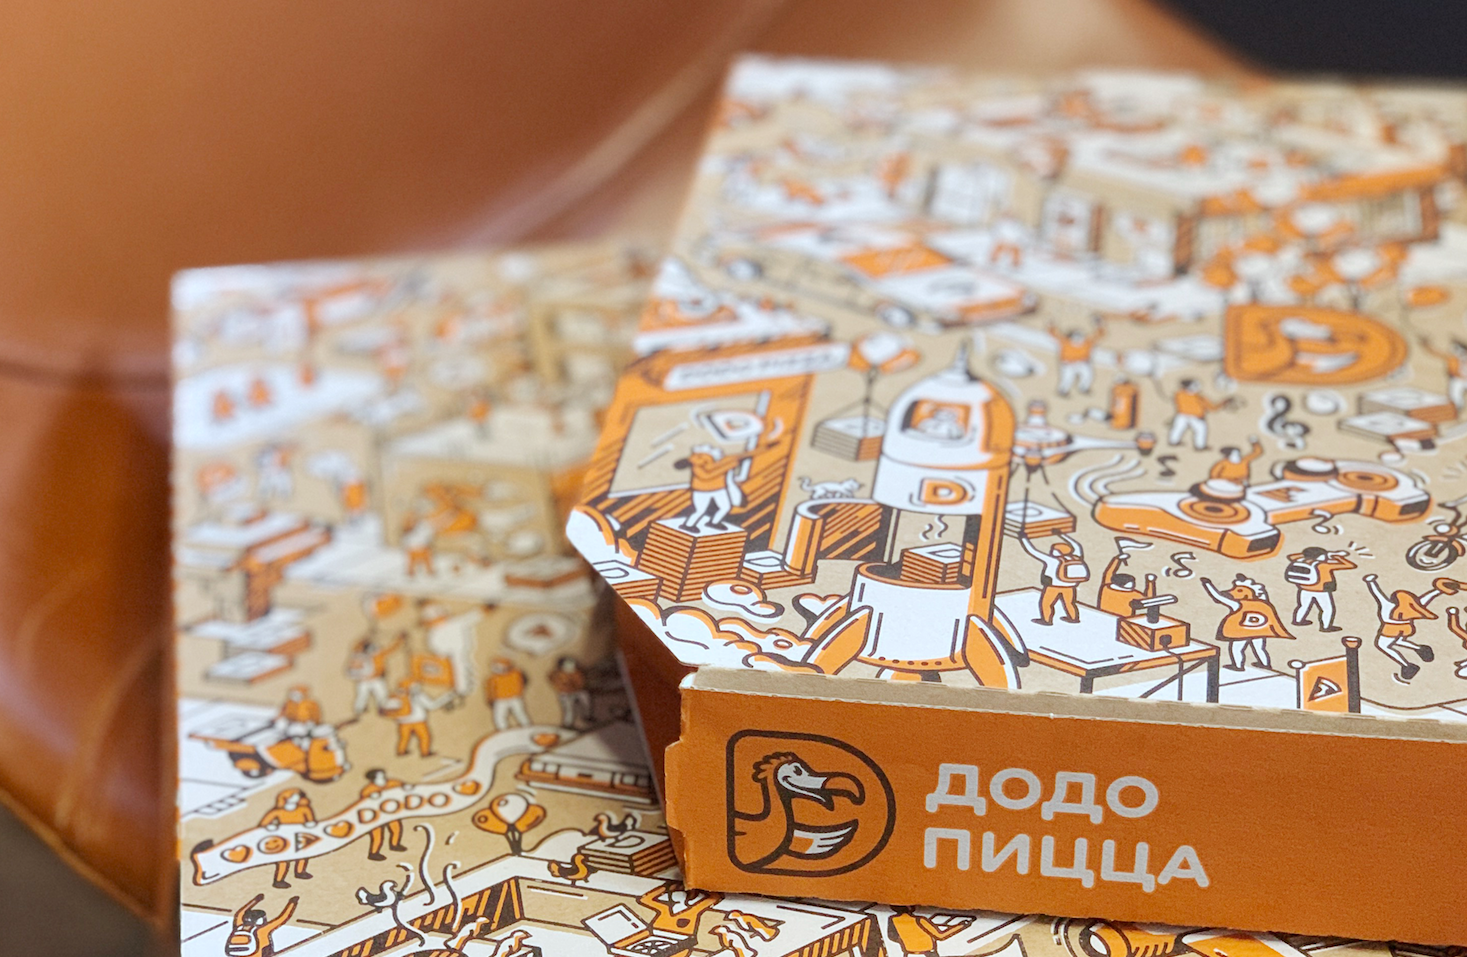 Глобальная упаковка, иллюстрации и дизайн для Додо Пиццы